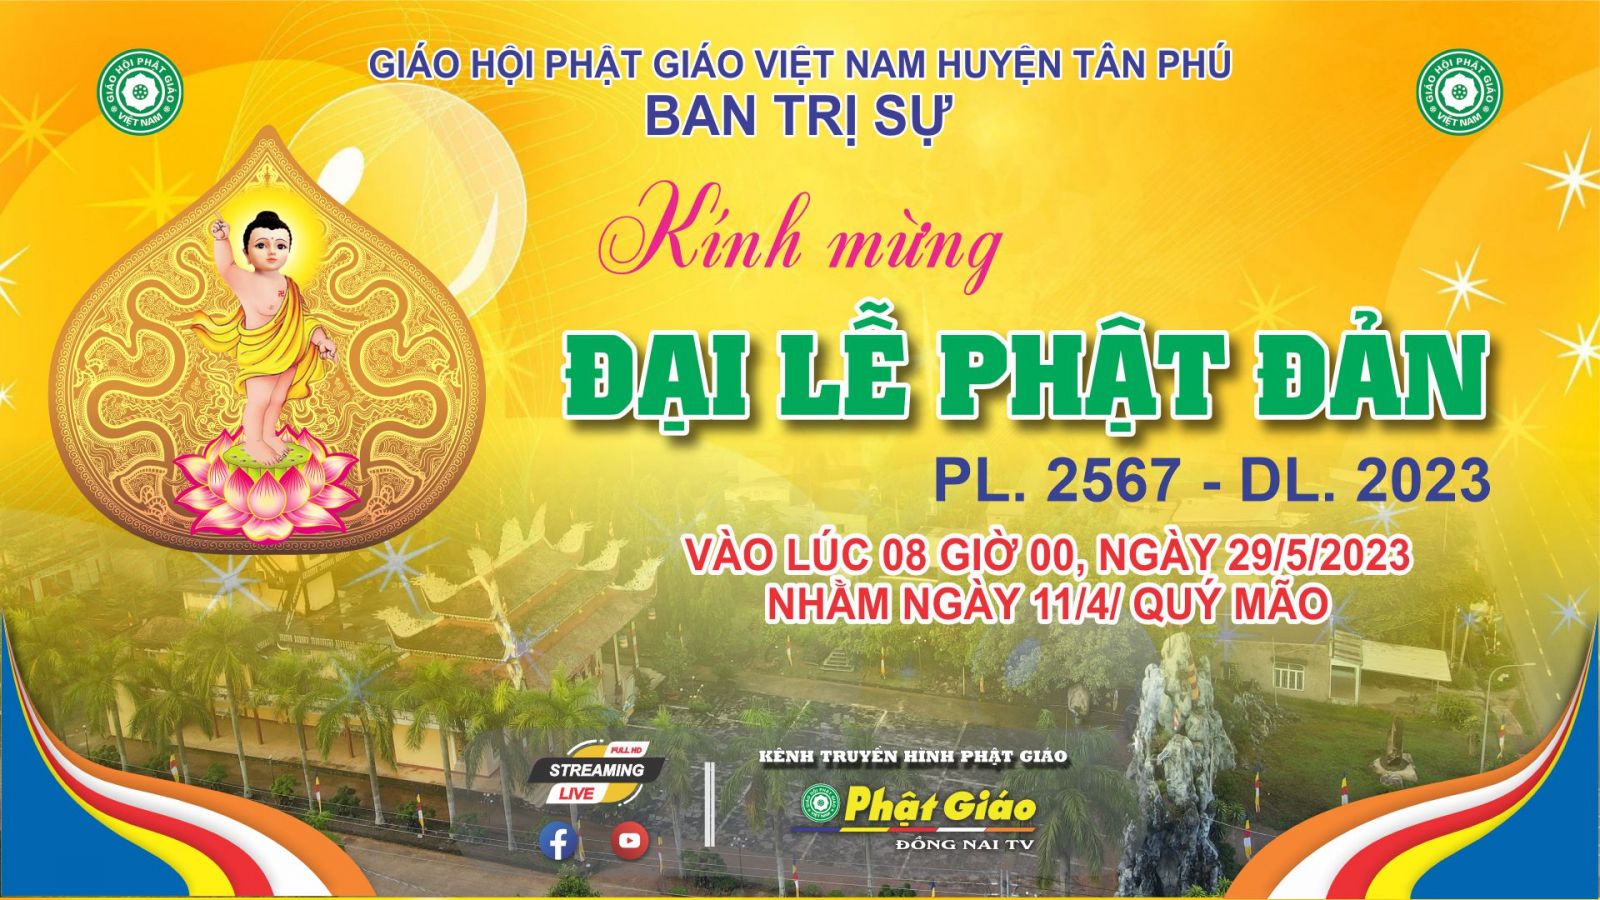 Trực tiếp: Ban Trị sự GHPGVN huyện Tân Phú trang nghiêm Kính mừng Đại Lễ Phật Đản PL. 2567 - DL. 2023.